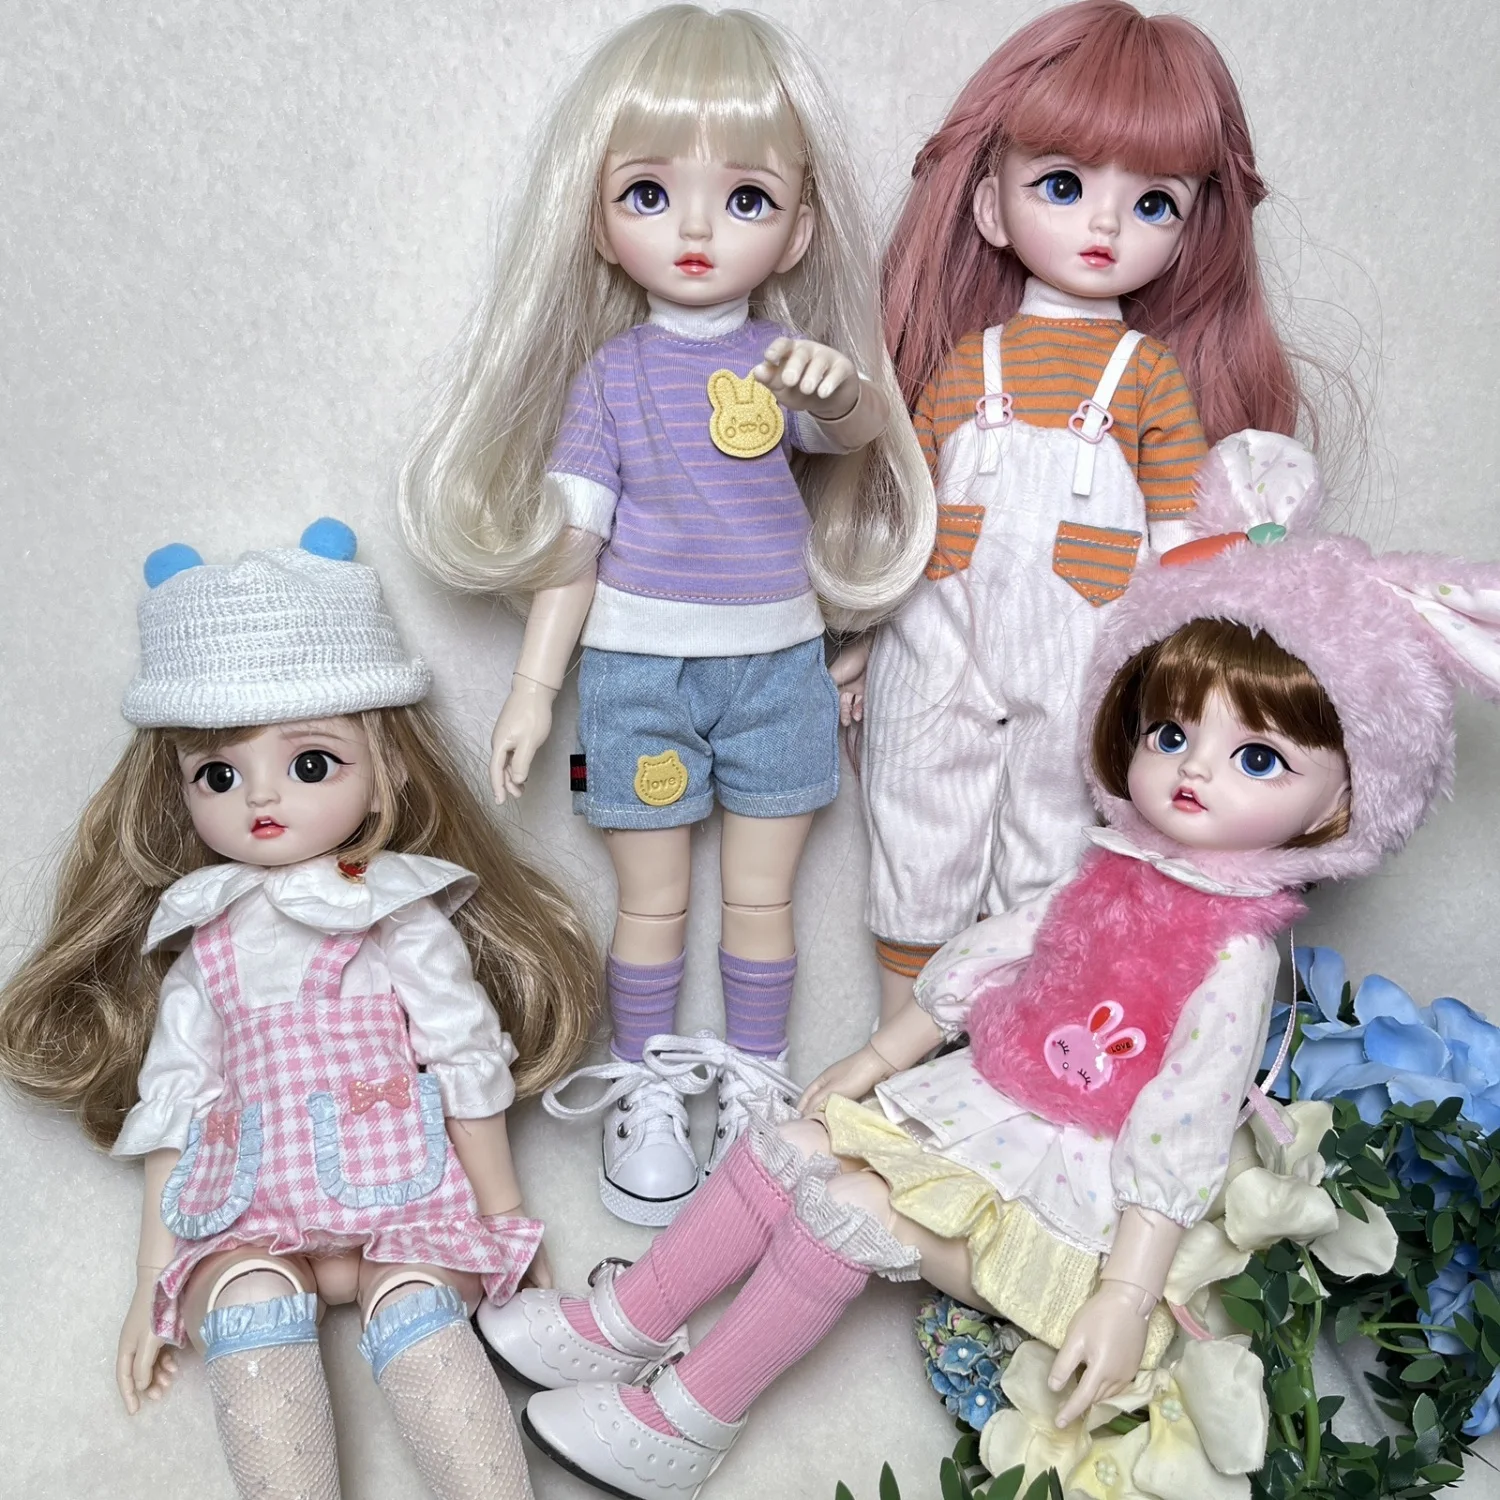 

Duoding Sister Mjd Doll Mechanical Joint Bjd Doll Princess Doll Girl Gift 3D True Eye 32cm High. Toys for Girls Doll Body 1/6